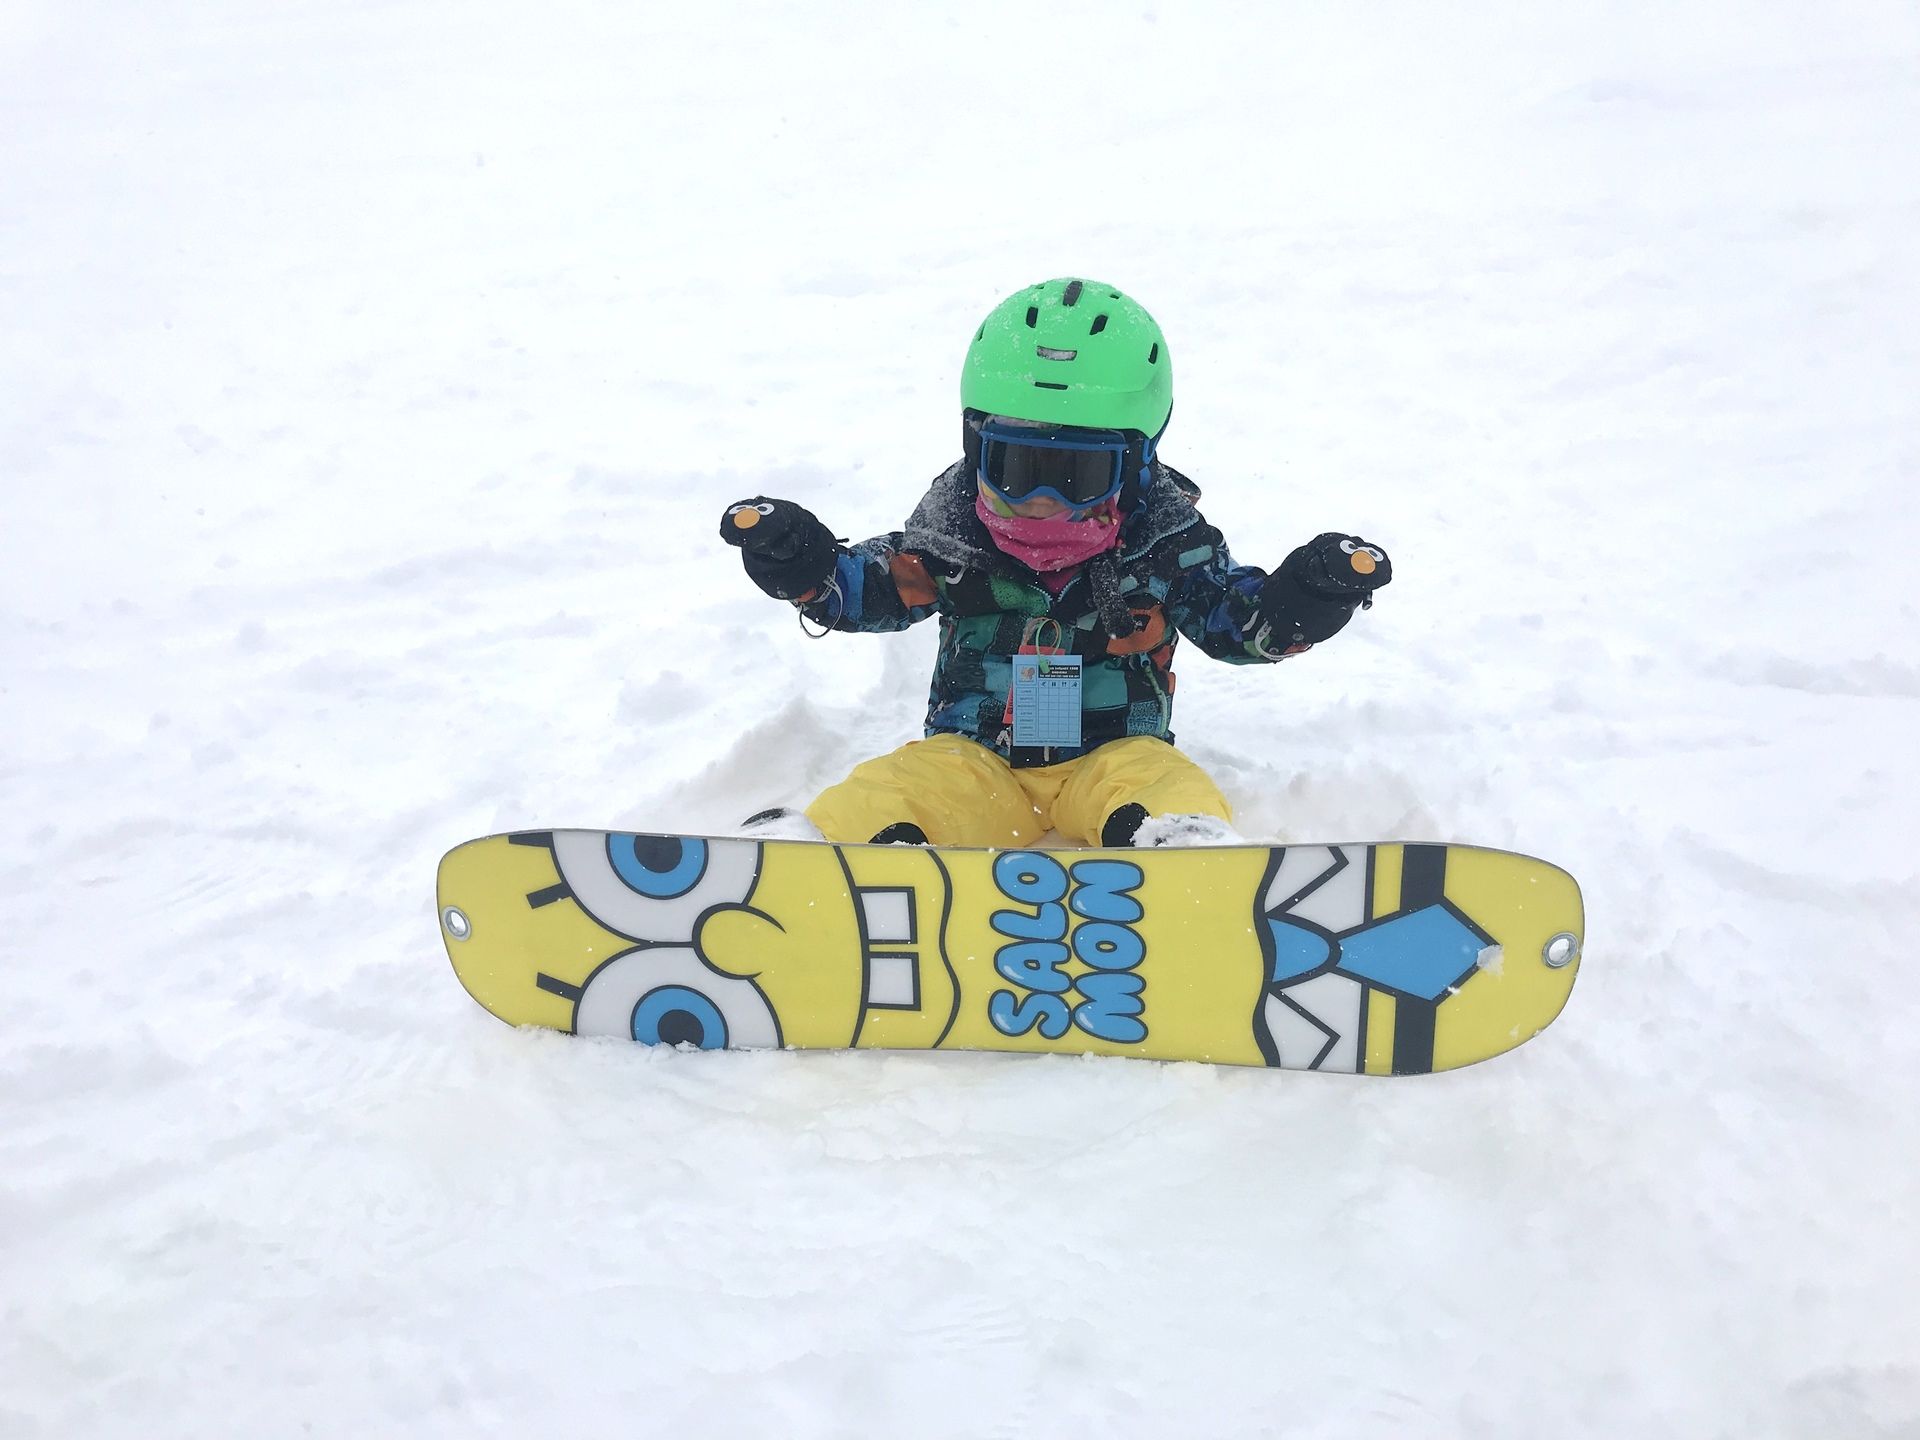 Snowboard, ¿a qué edad empiezan los niños? - Katia - Nevasport.com